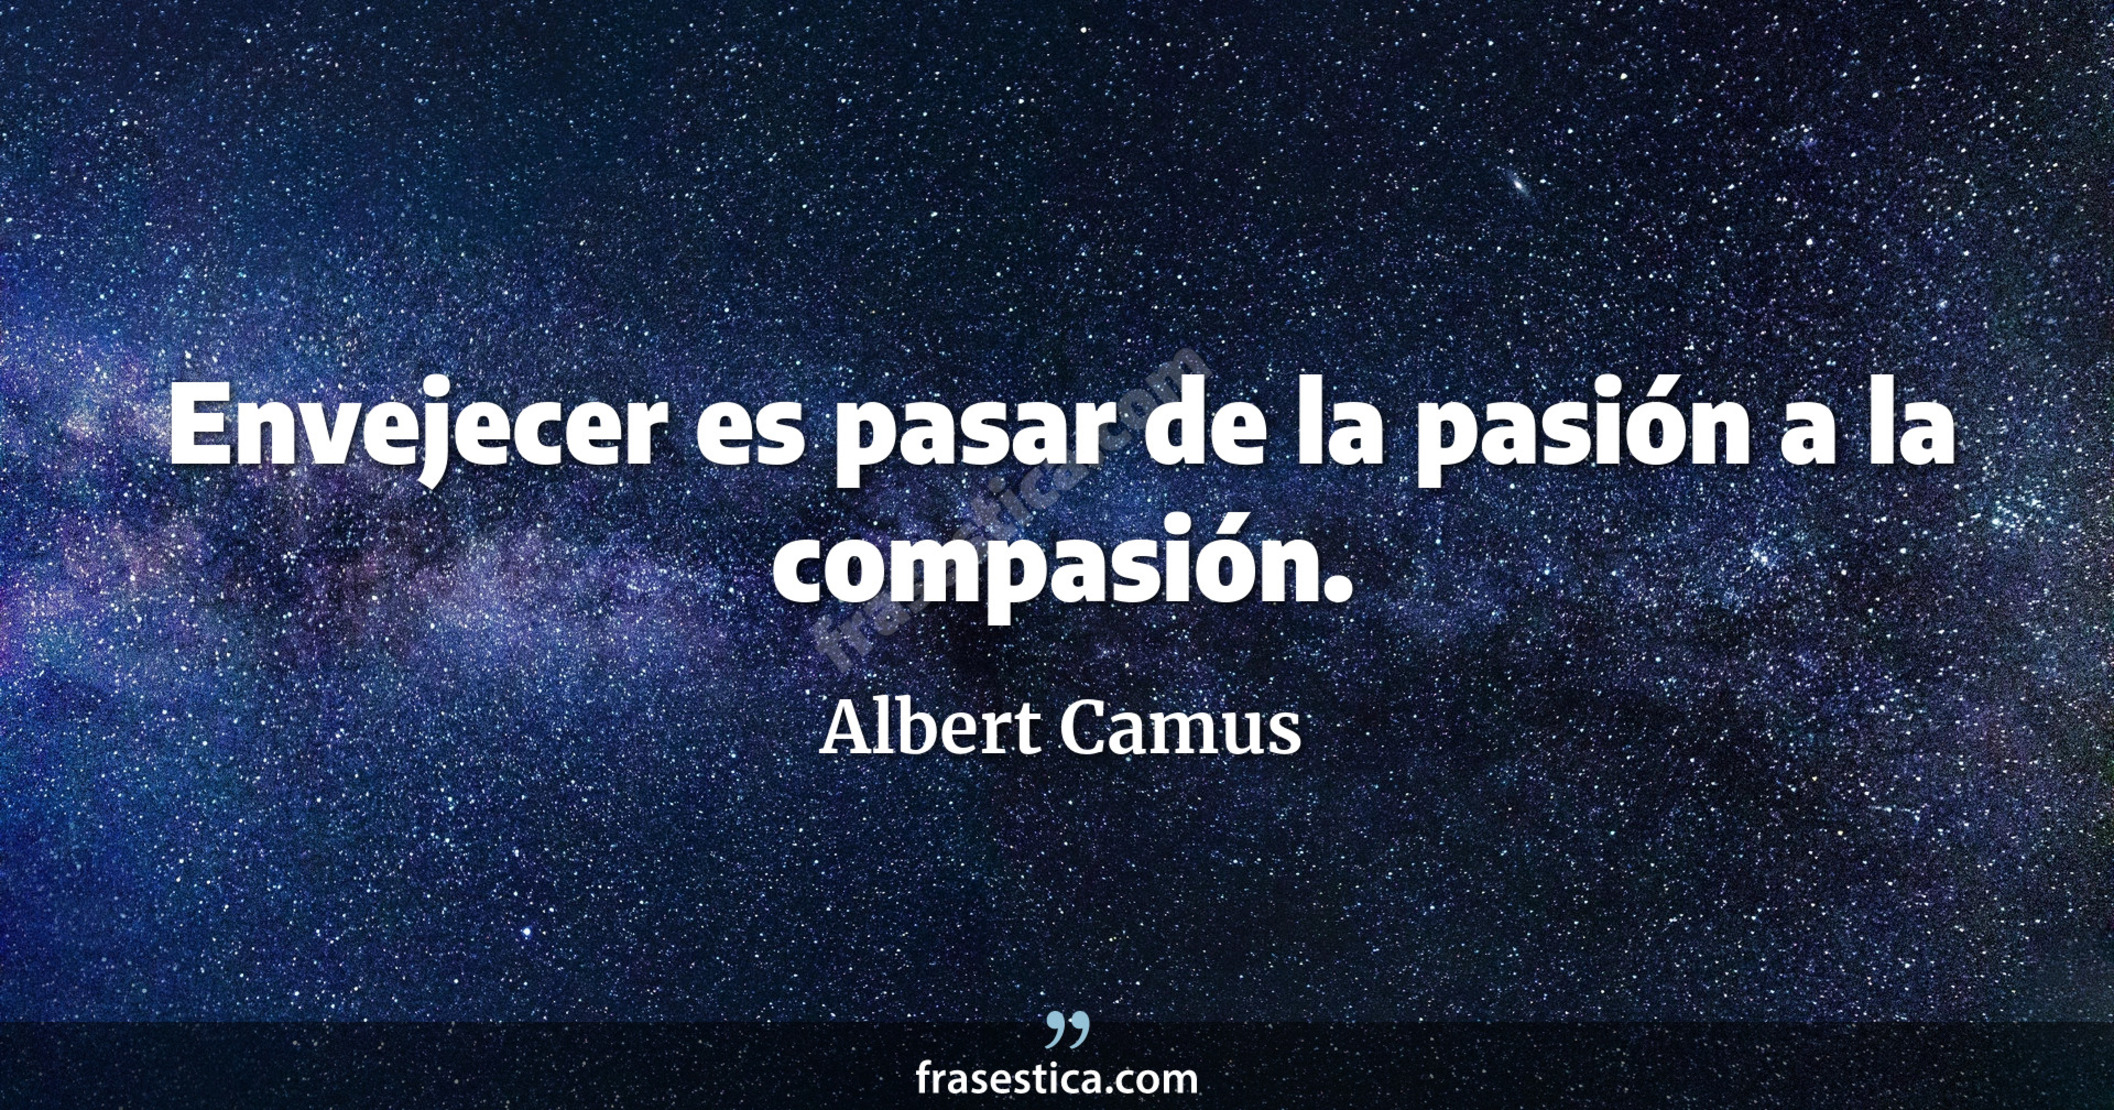 Envejecer es pasar de la pasión a la compasión. - Albert Camus